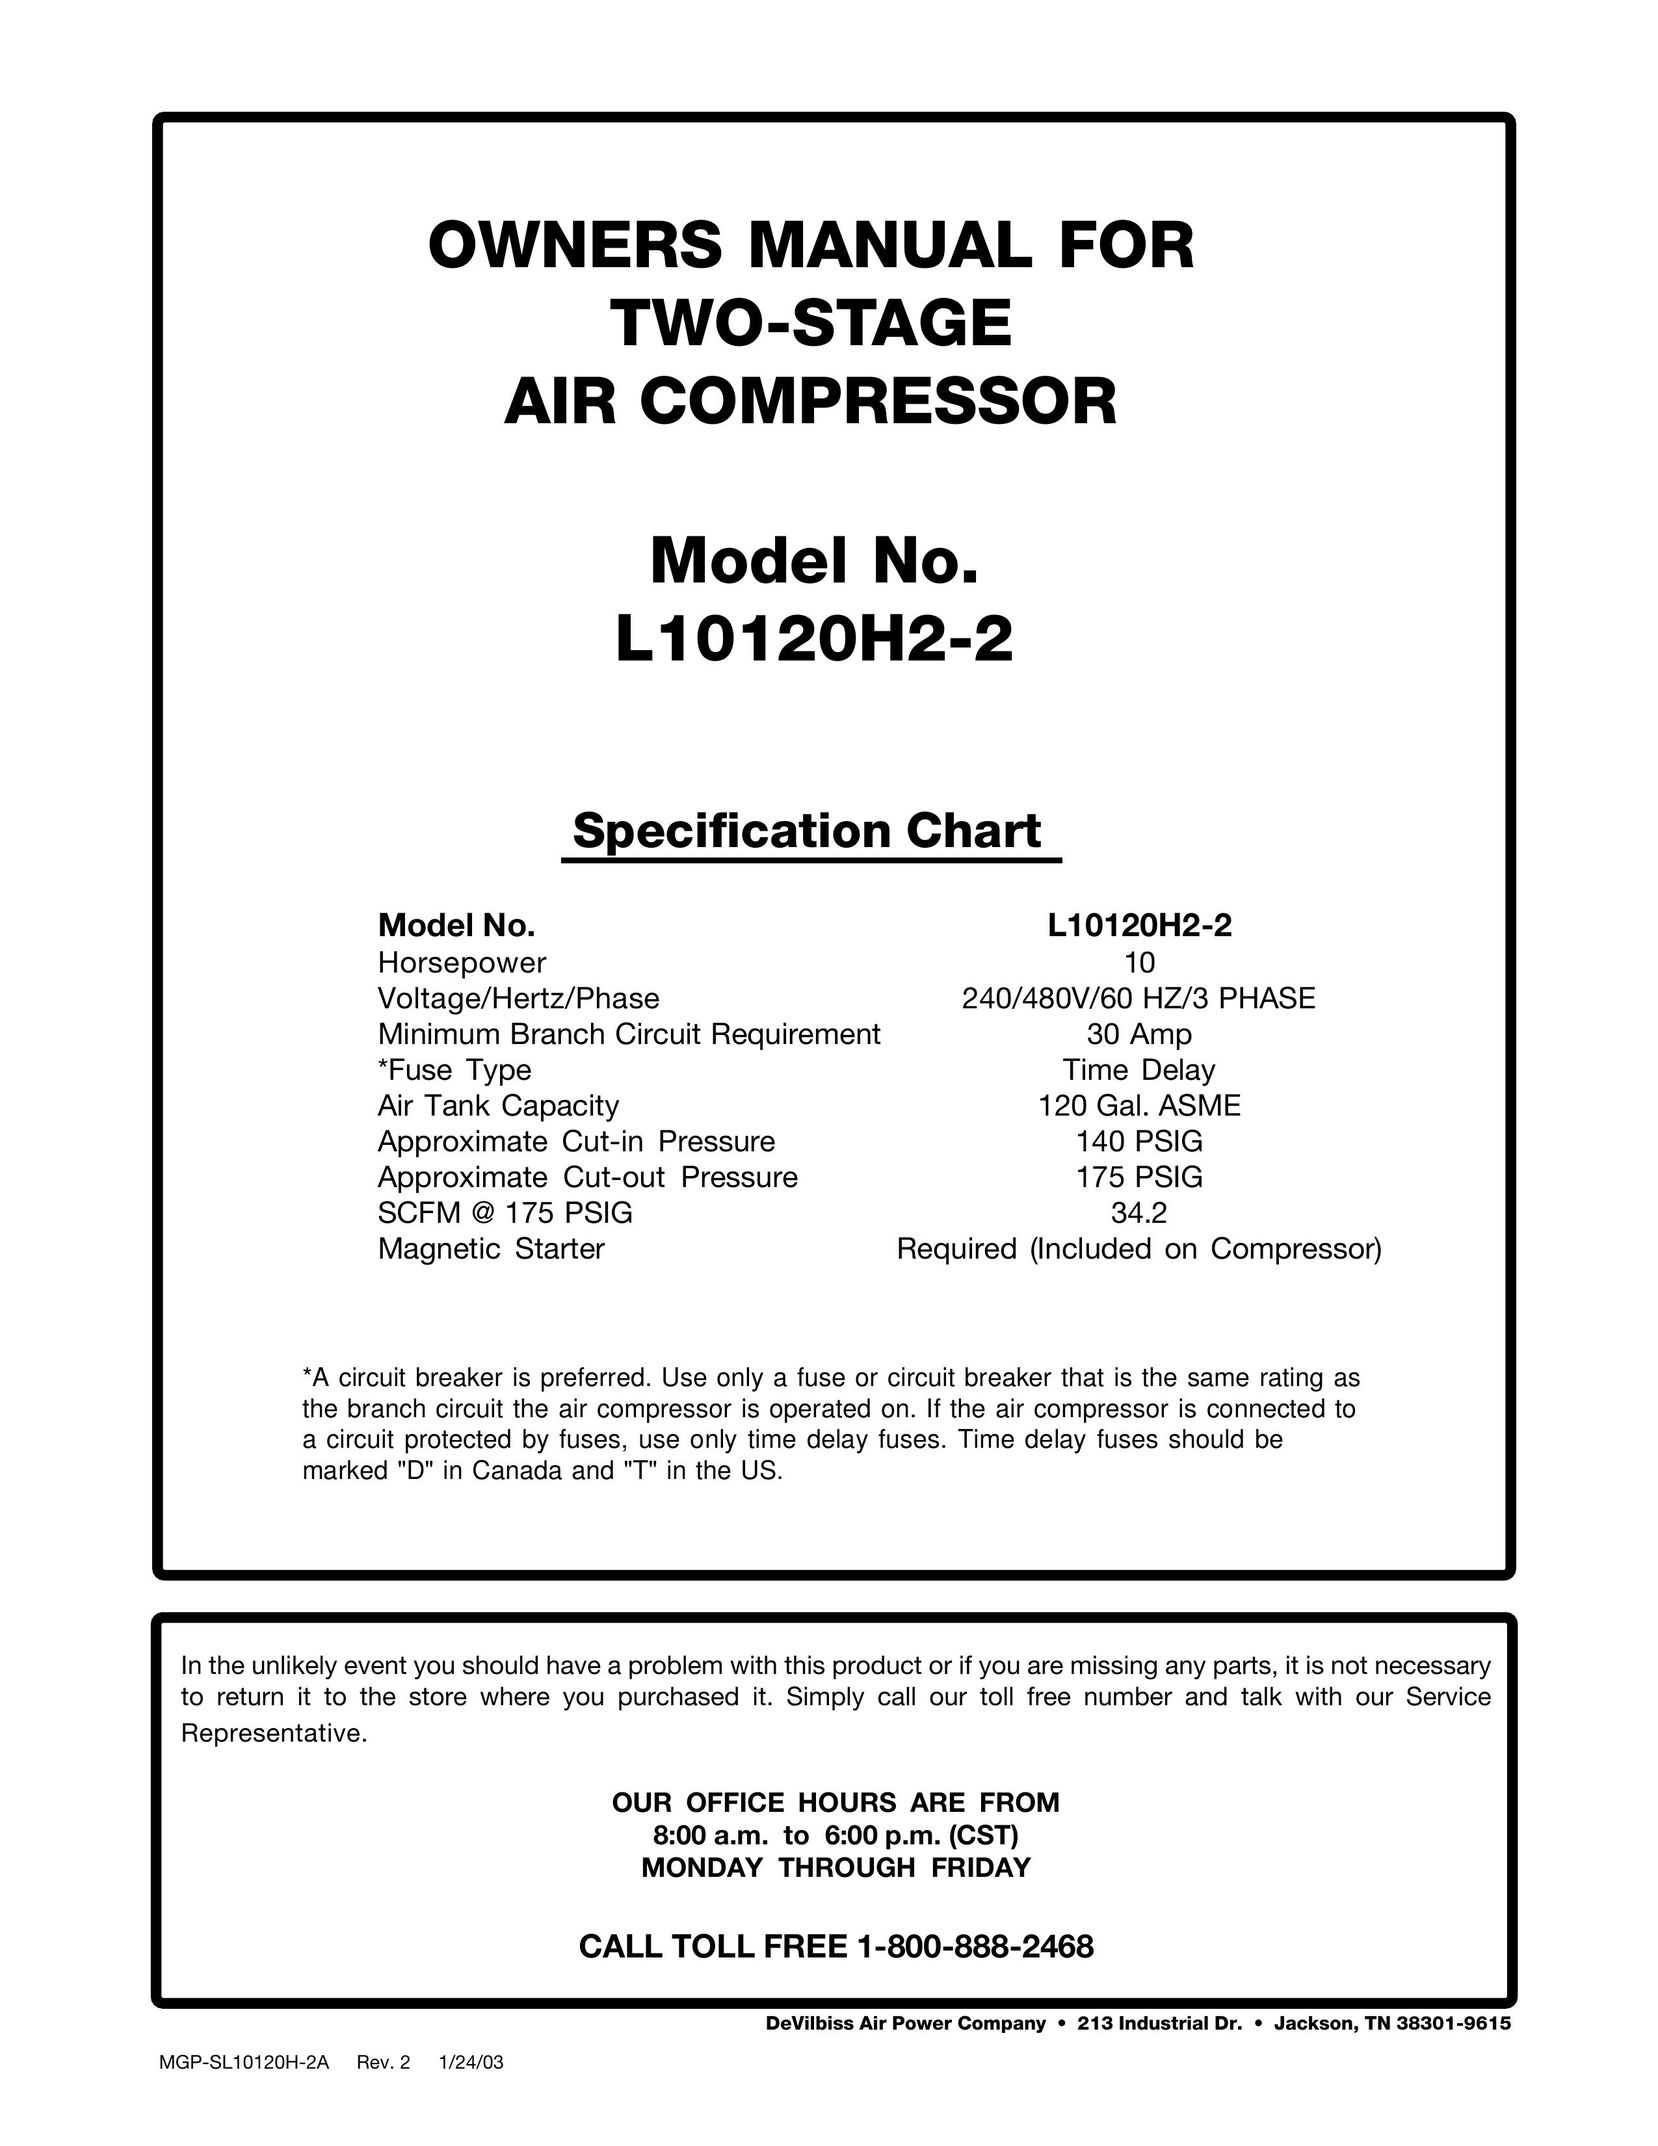 DeVillbiss Air Power Company L10120H2-2 Air Compressor User Manual